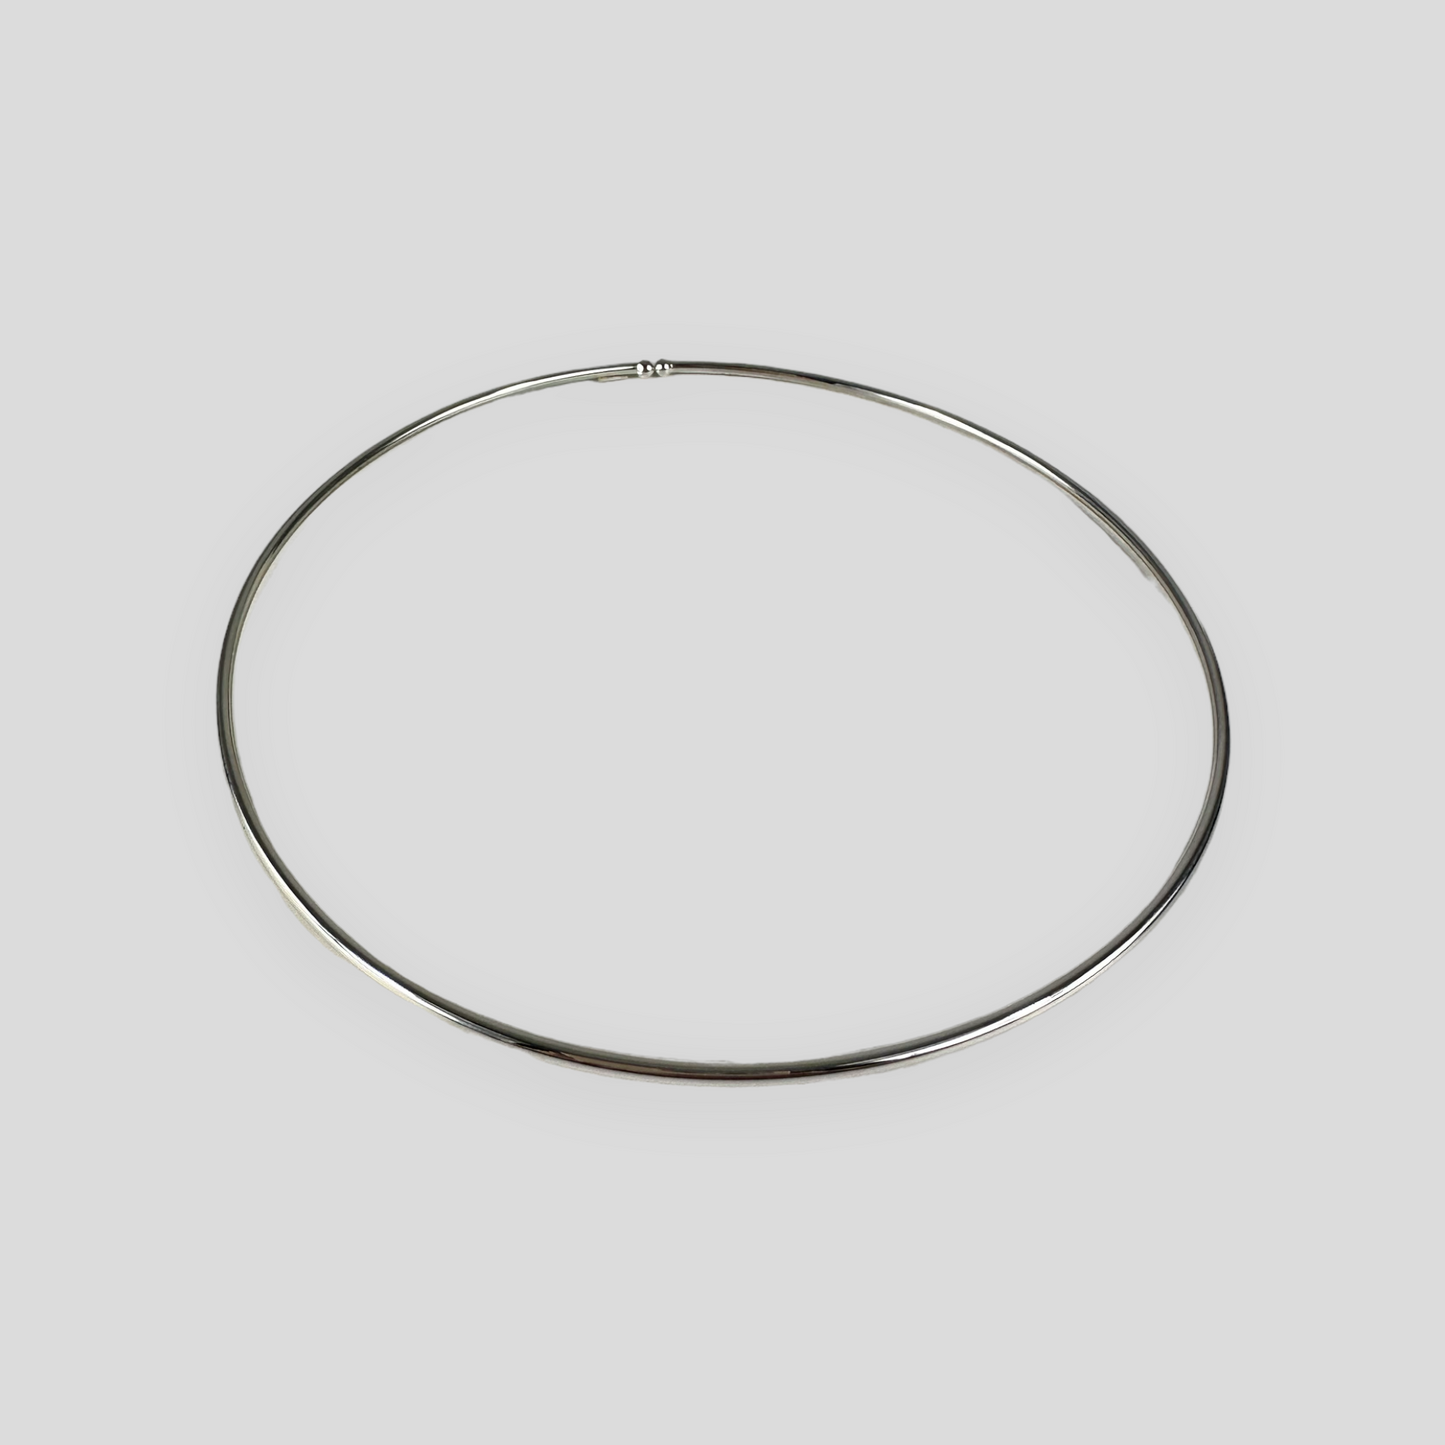 Collana girocollo rigida in argento 925, disponibile in 3 colorazioni